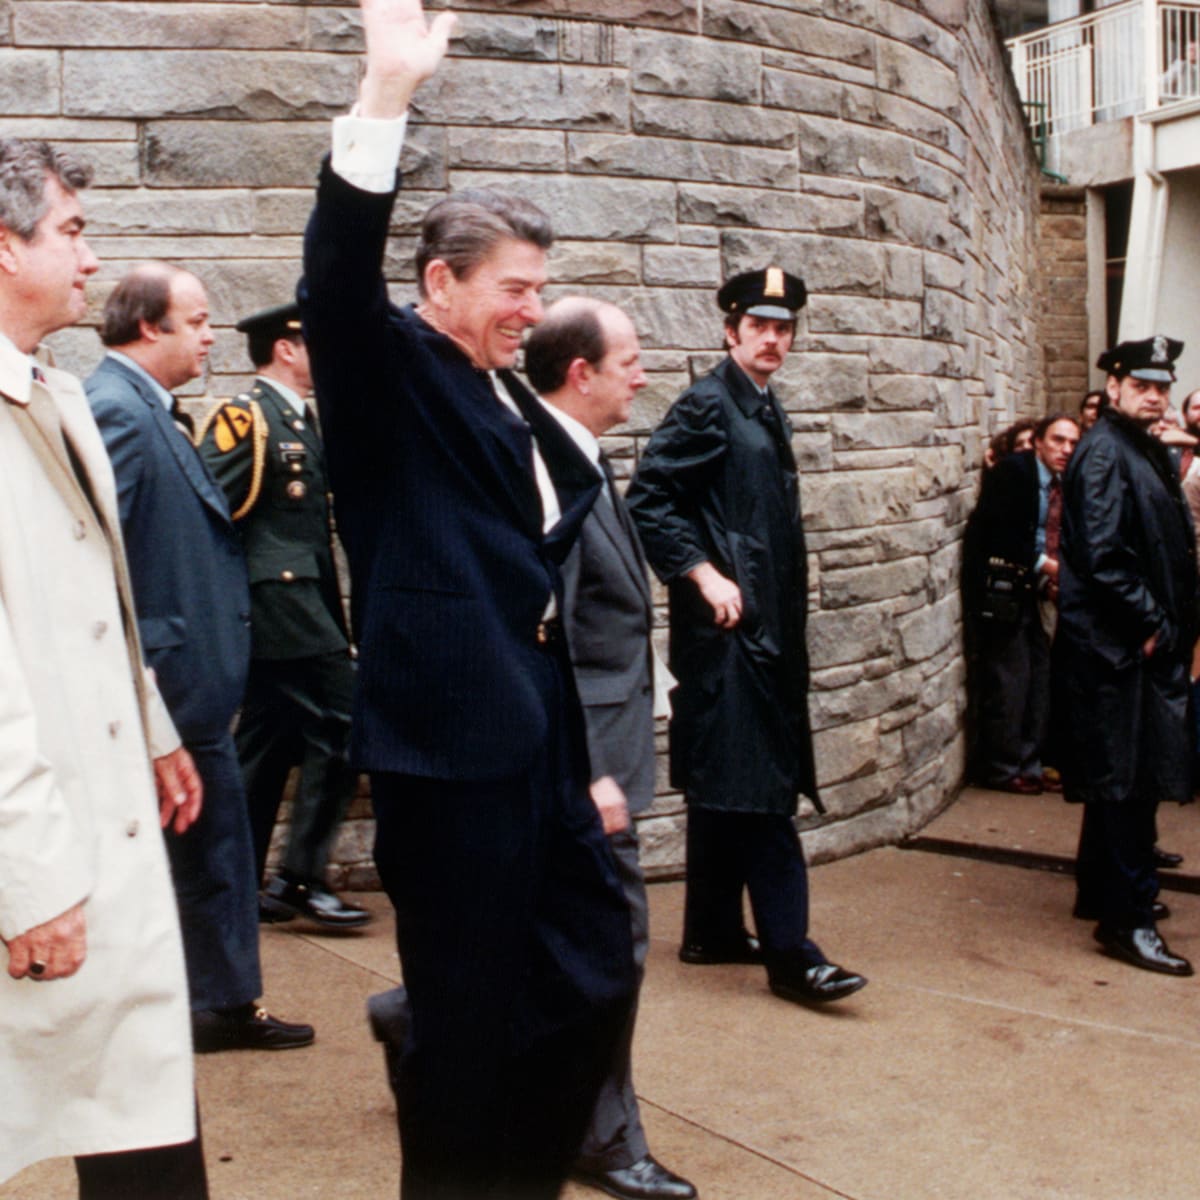 Ông&nbsp;Ronald Reagan vẫy chào đám đông ngay trước thời điểm vụ ám sát xảy ra. Ảnh: Biography